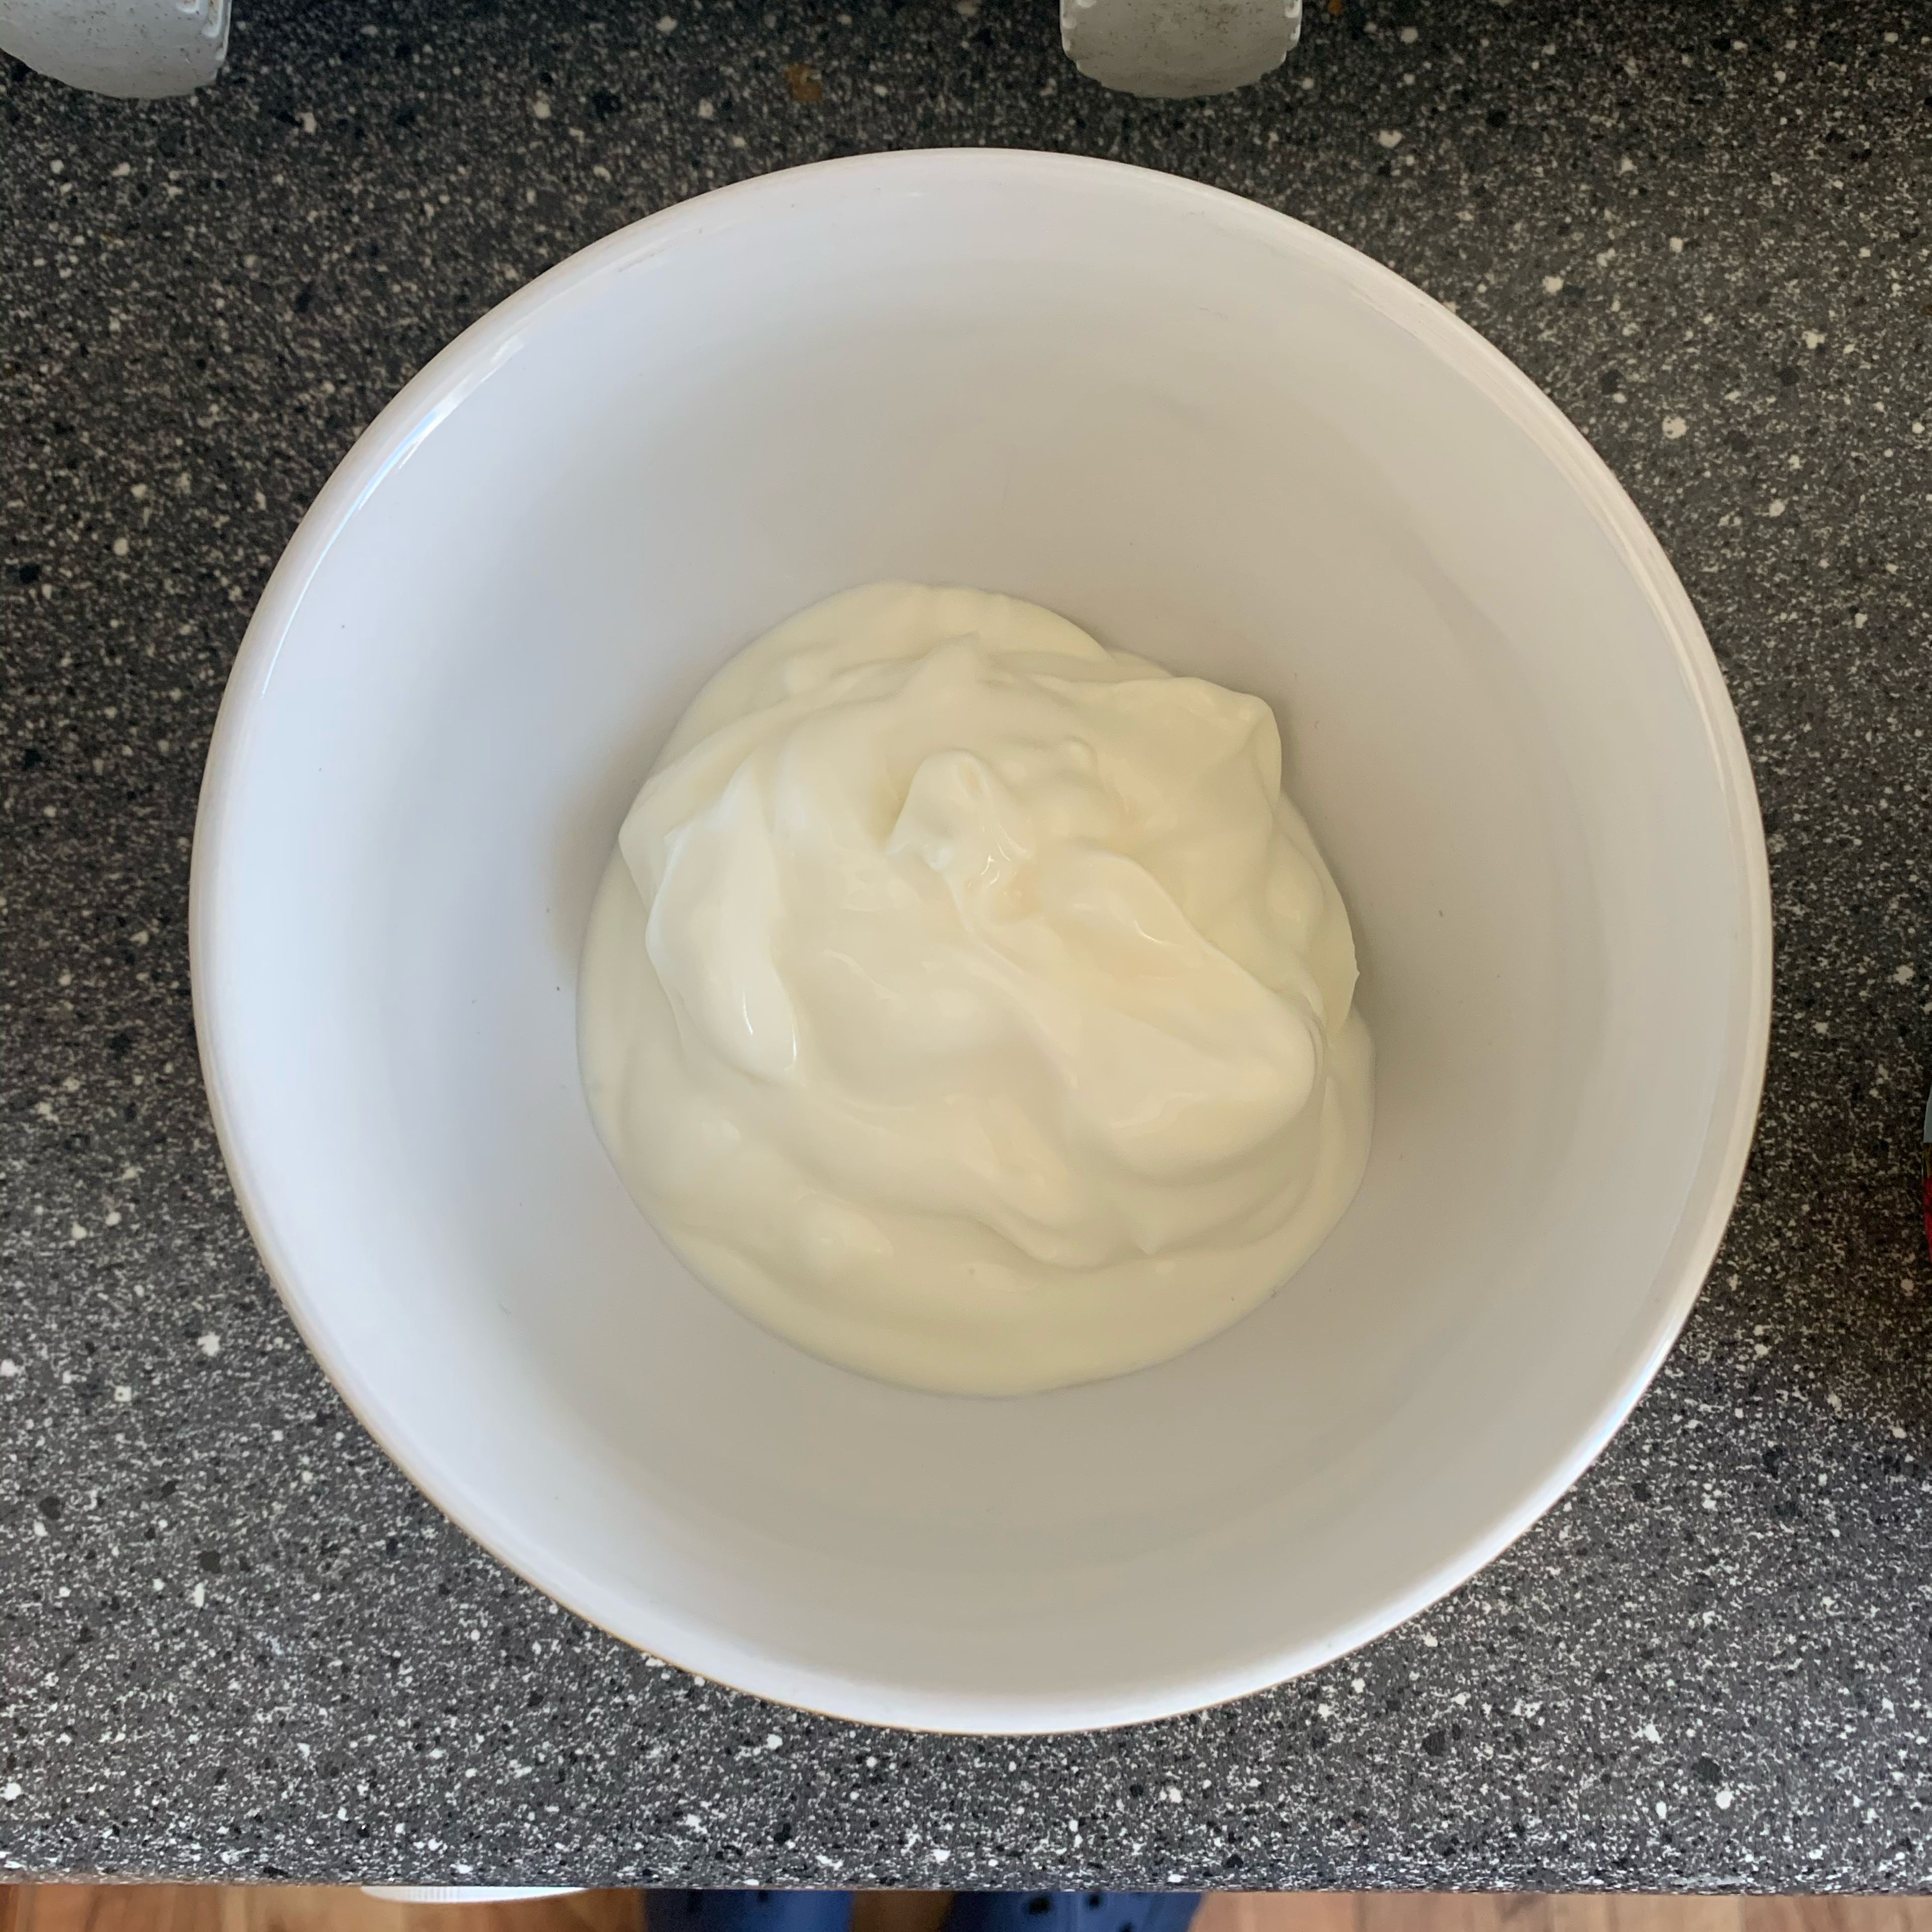 Joghurt in eine Schüssel geben